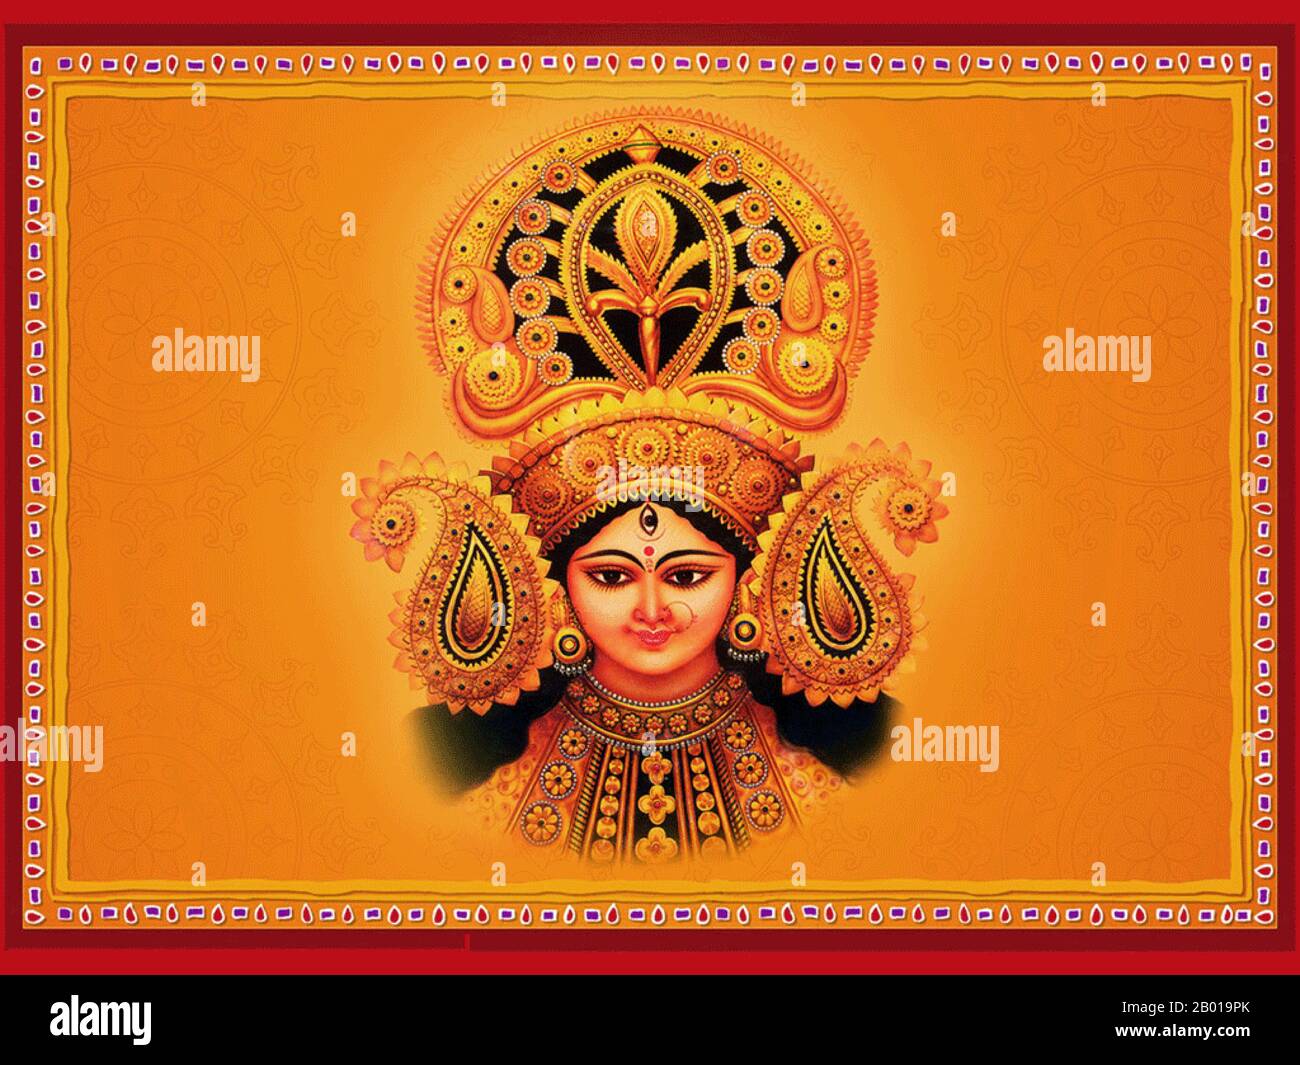 India: Navrati (Dussehra) immagine di Durga, la Divina Dea Madre. Navratri, Navaratri, o Navarathri è un festival indù di culto di Shakti. La parola Navaratri significa letteralmente 'nove notti' in Sanscrito, nava significa nove e ratri significa notte. Durante queste nove notti e dieci giorni, nove forme di Shakti/Devi sono adorate. È comunemente indicato come Dussehra. Si ritiene che l'usanza di celebrare Dussehra abbia avuto origine nel regno indù Deccan di Vijayanagar, con la sua capitale a Hampi, nel 14th secolo. Foto Stock